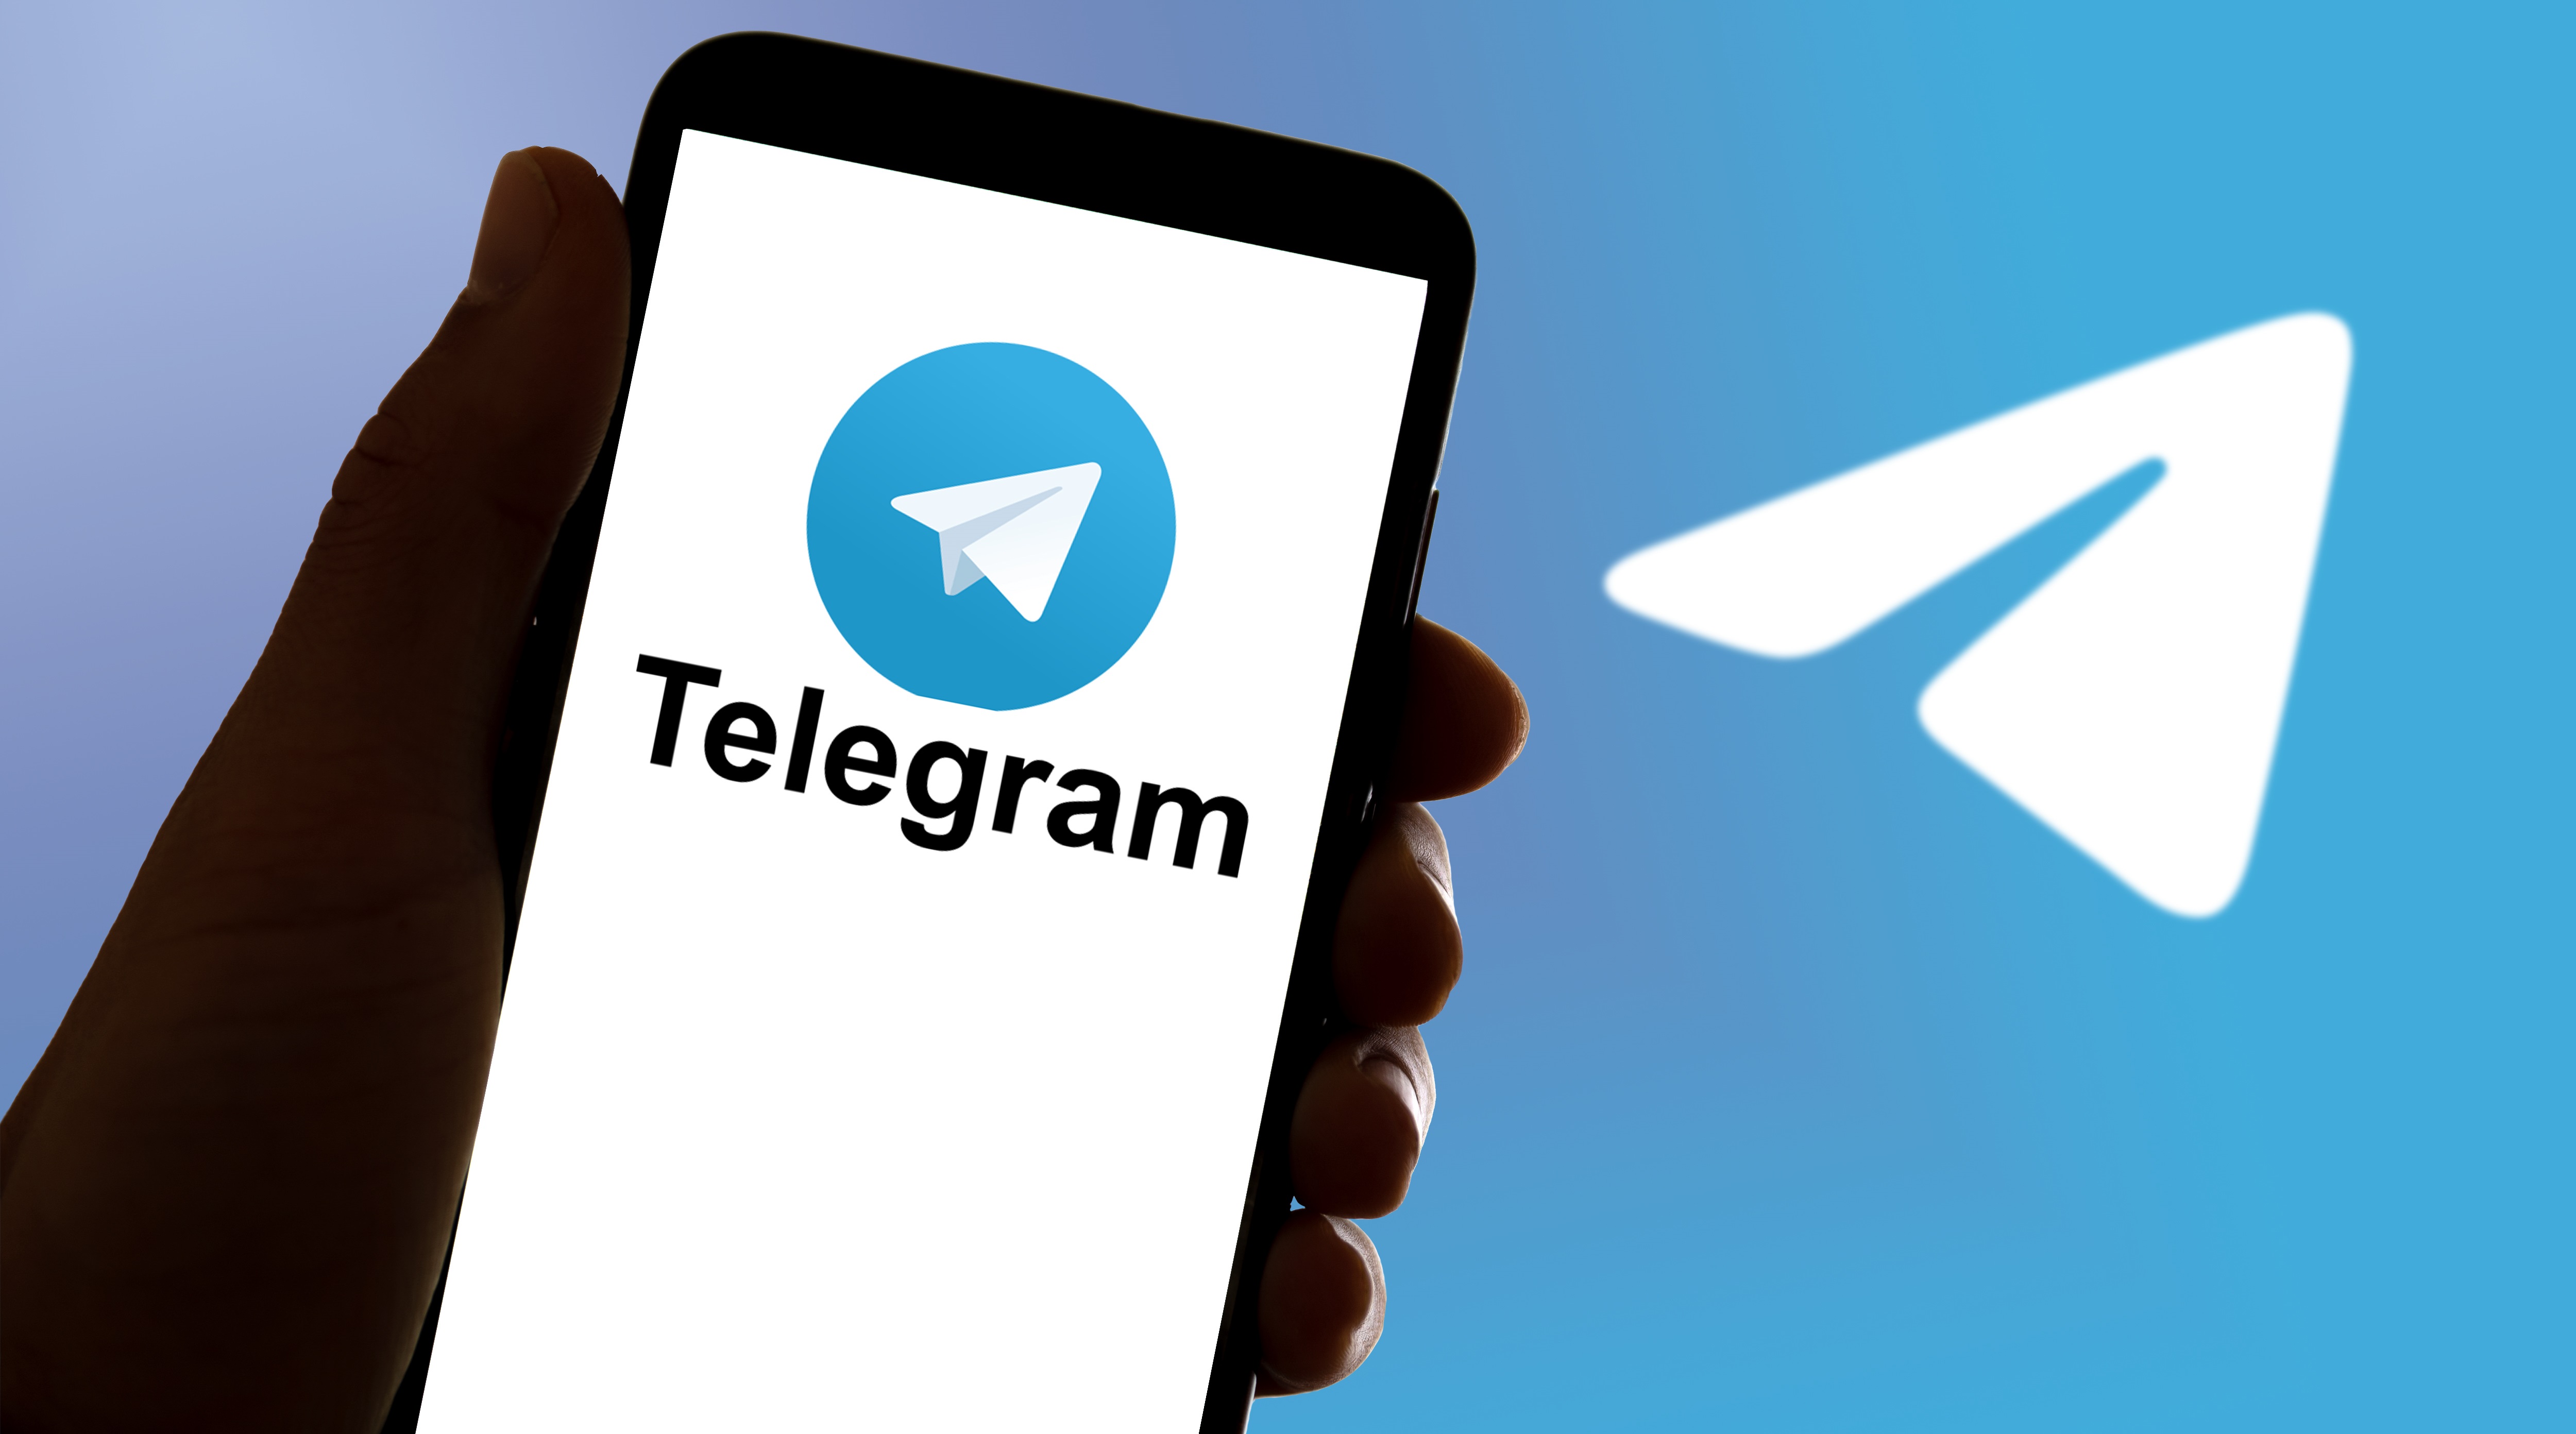  telegram    -   reuters 